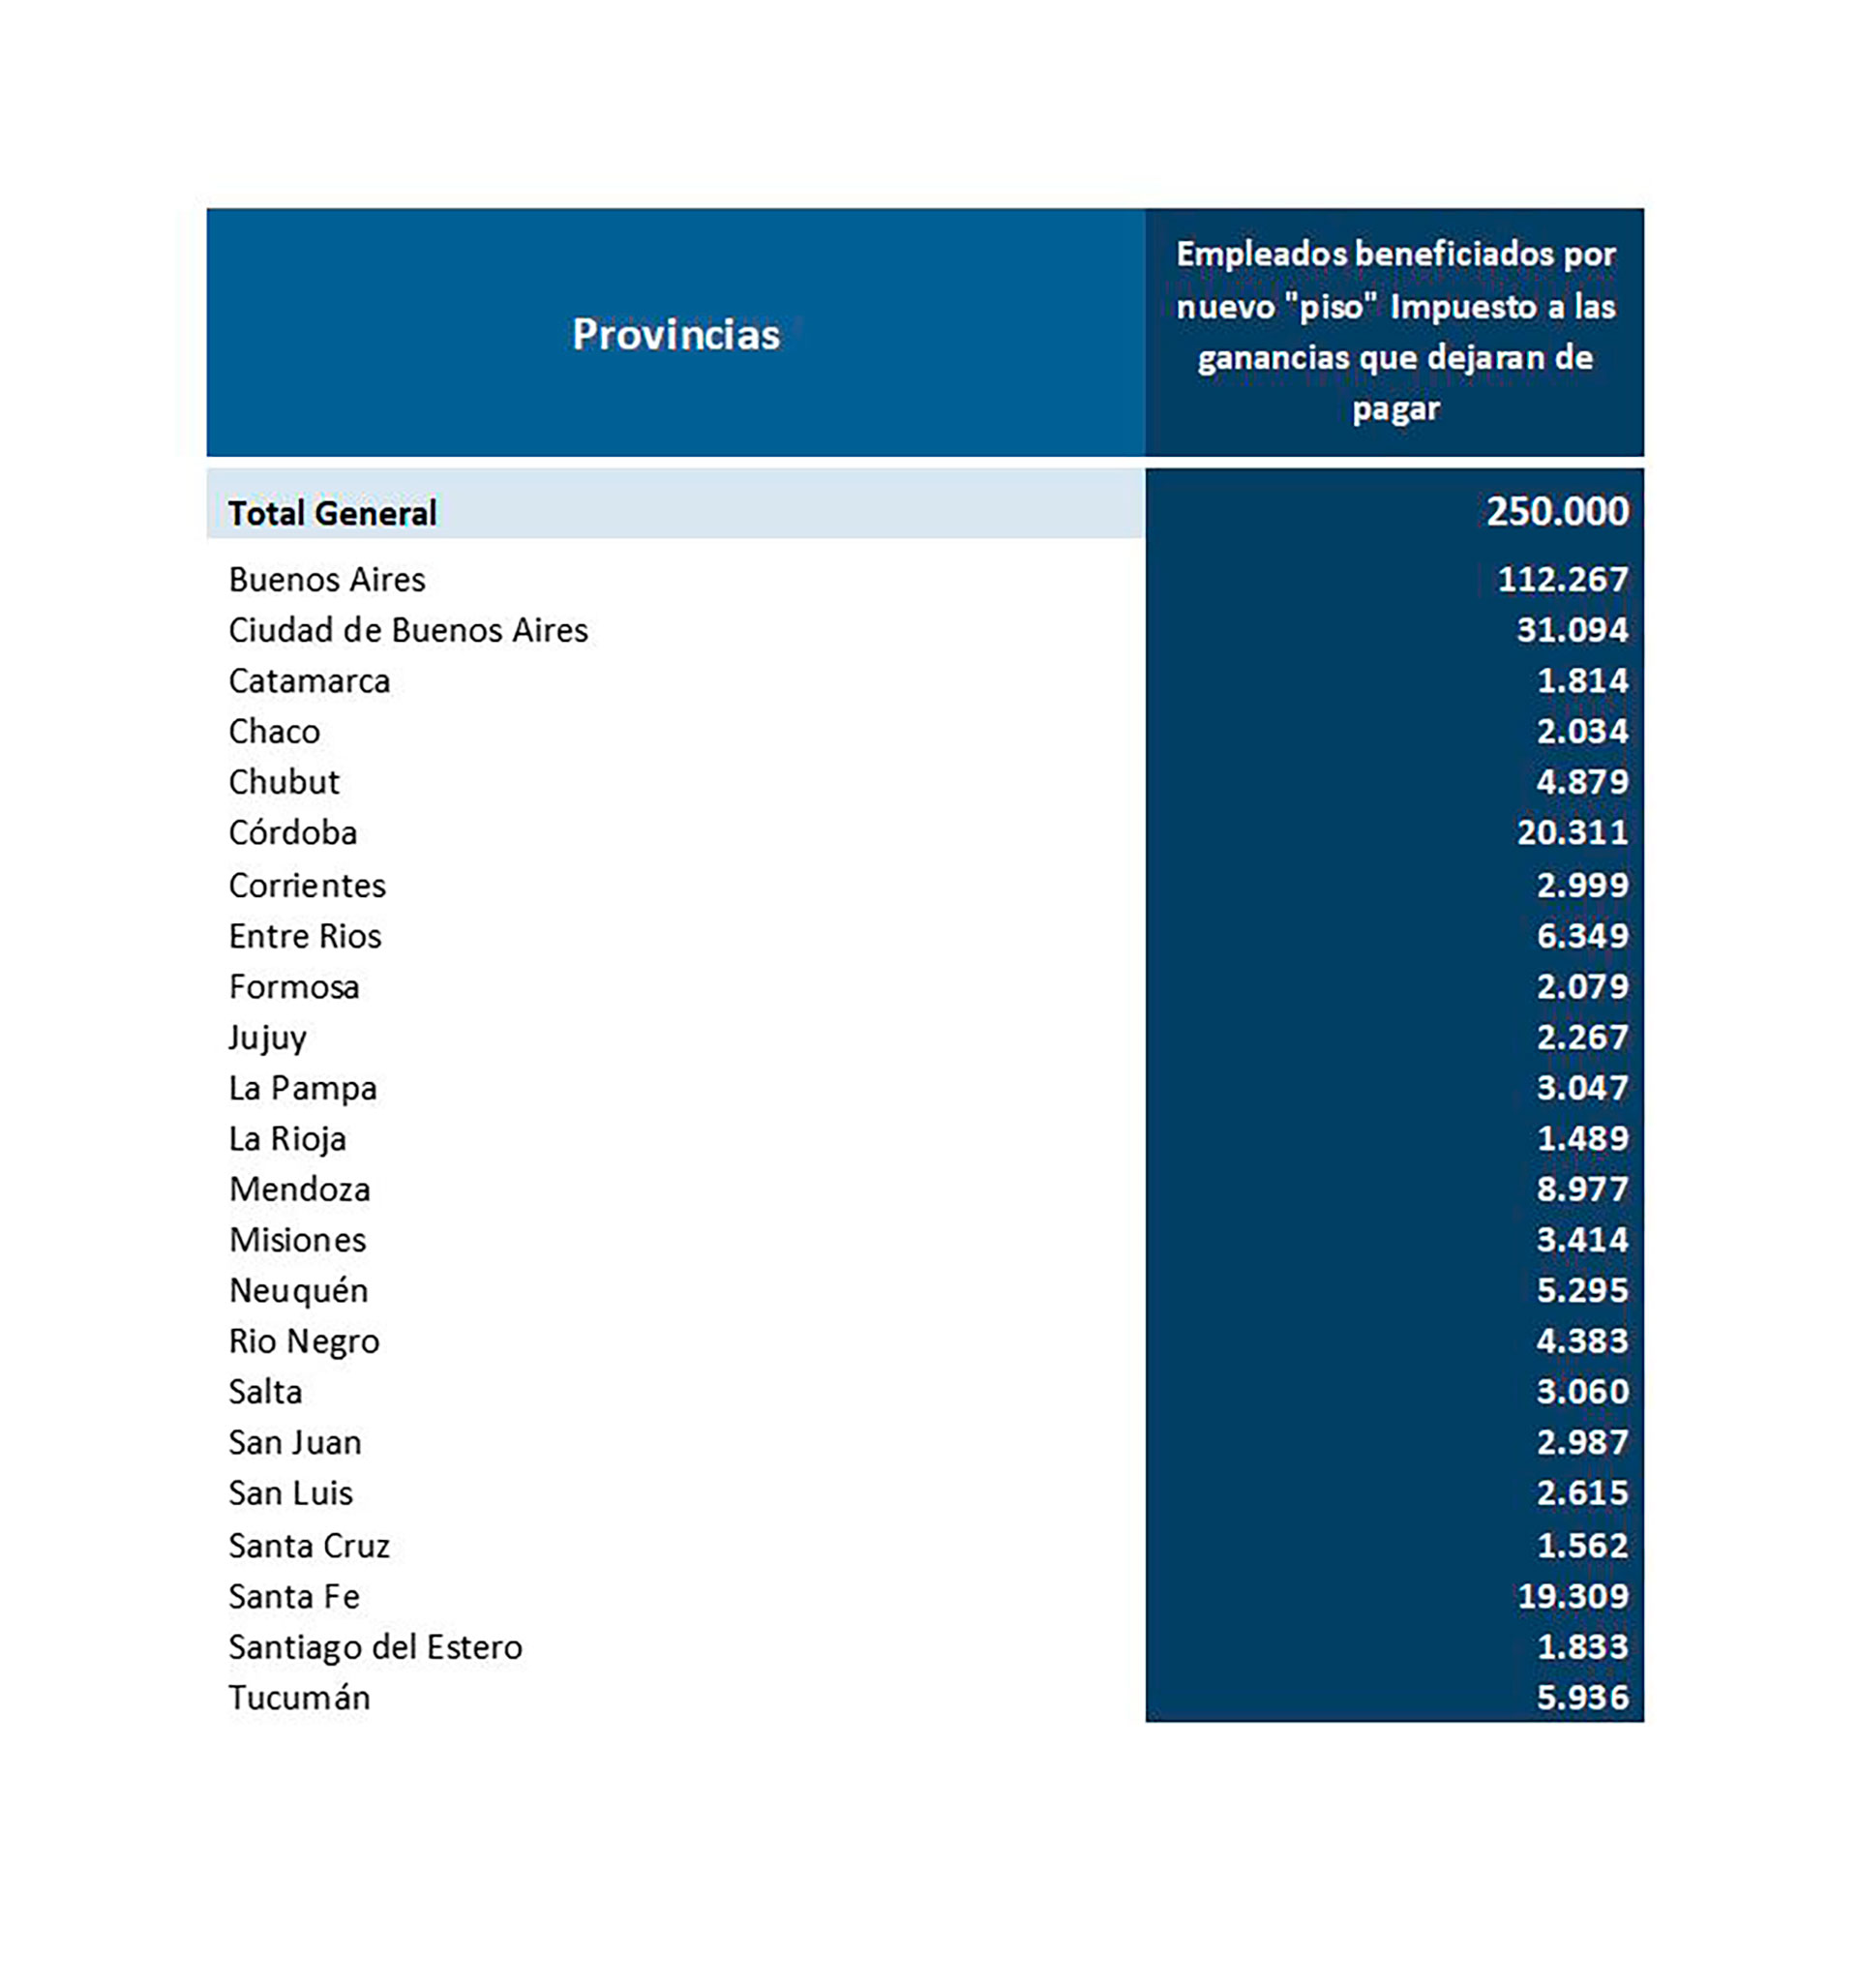 La distribución del número de beneficiarios, por provincia